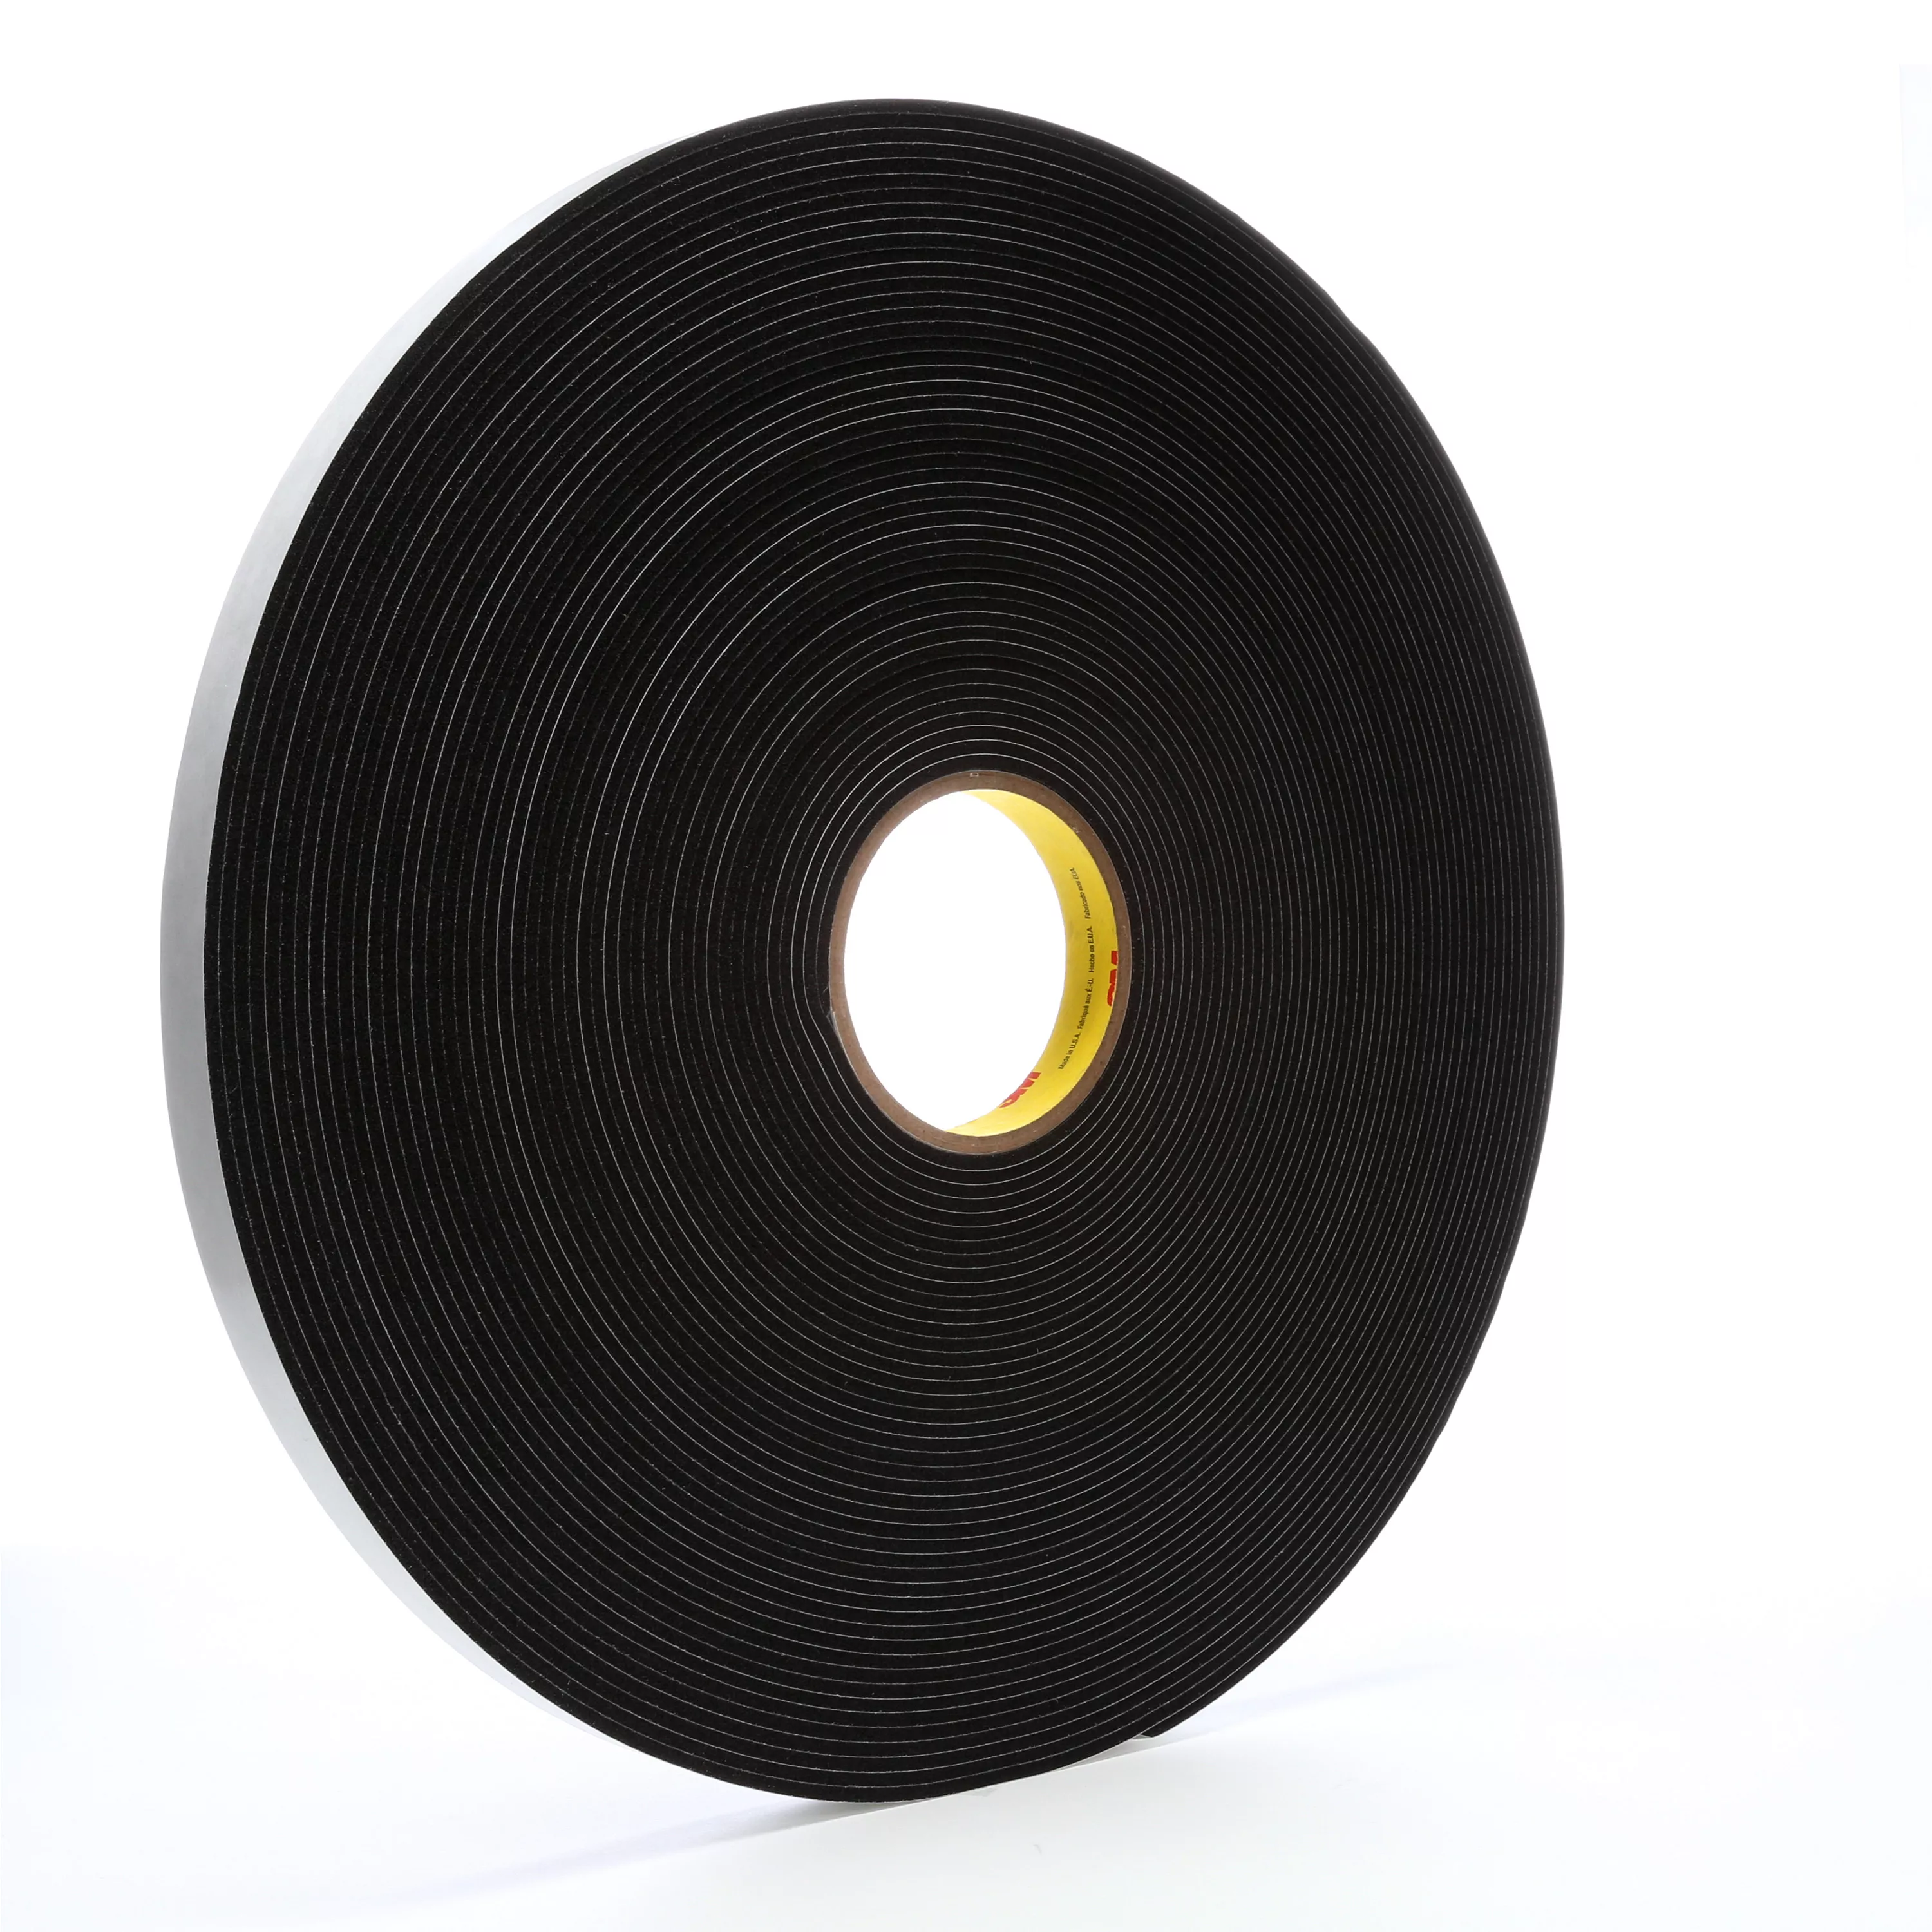 3M™ Vinyl Foam Tape 4508, Black, 3/4 in x 36 yd, 125 mil, 12 Roll/Case